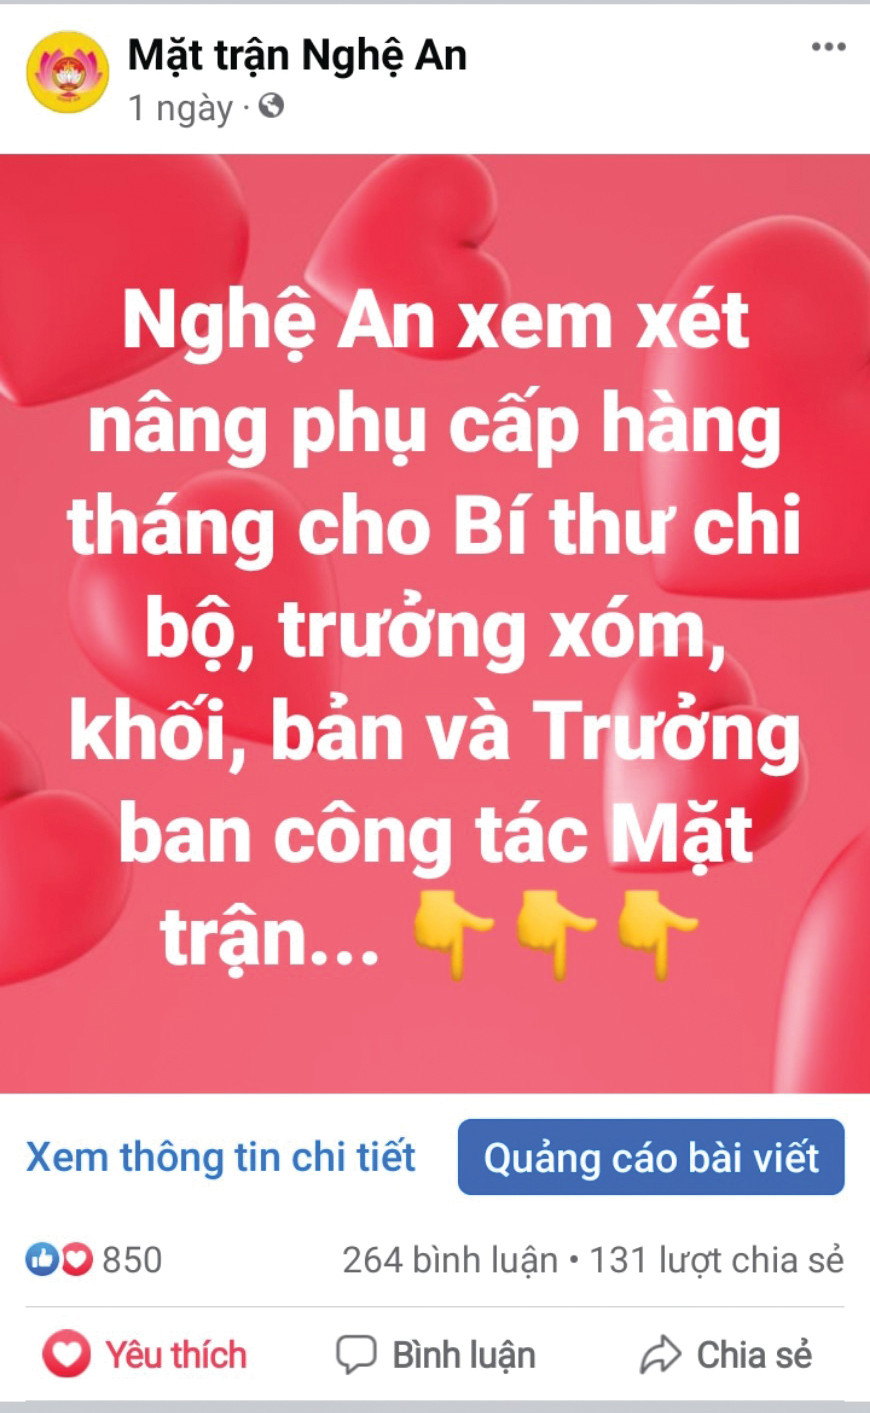 Mỗi nội dung được chuyển tải lên Trang Fanpage “Mặt trận Nghệ An” luôn nhận được hàng trăm lượt like, bình luận và chia sẻ của người dân, bạn đọc.